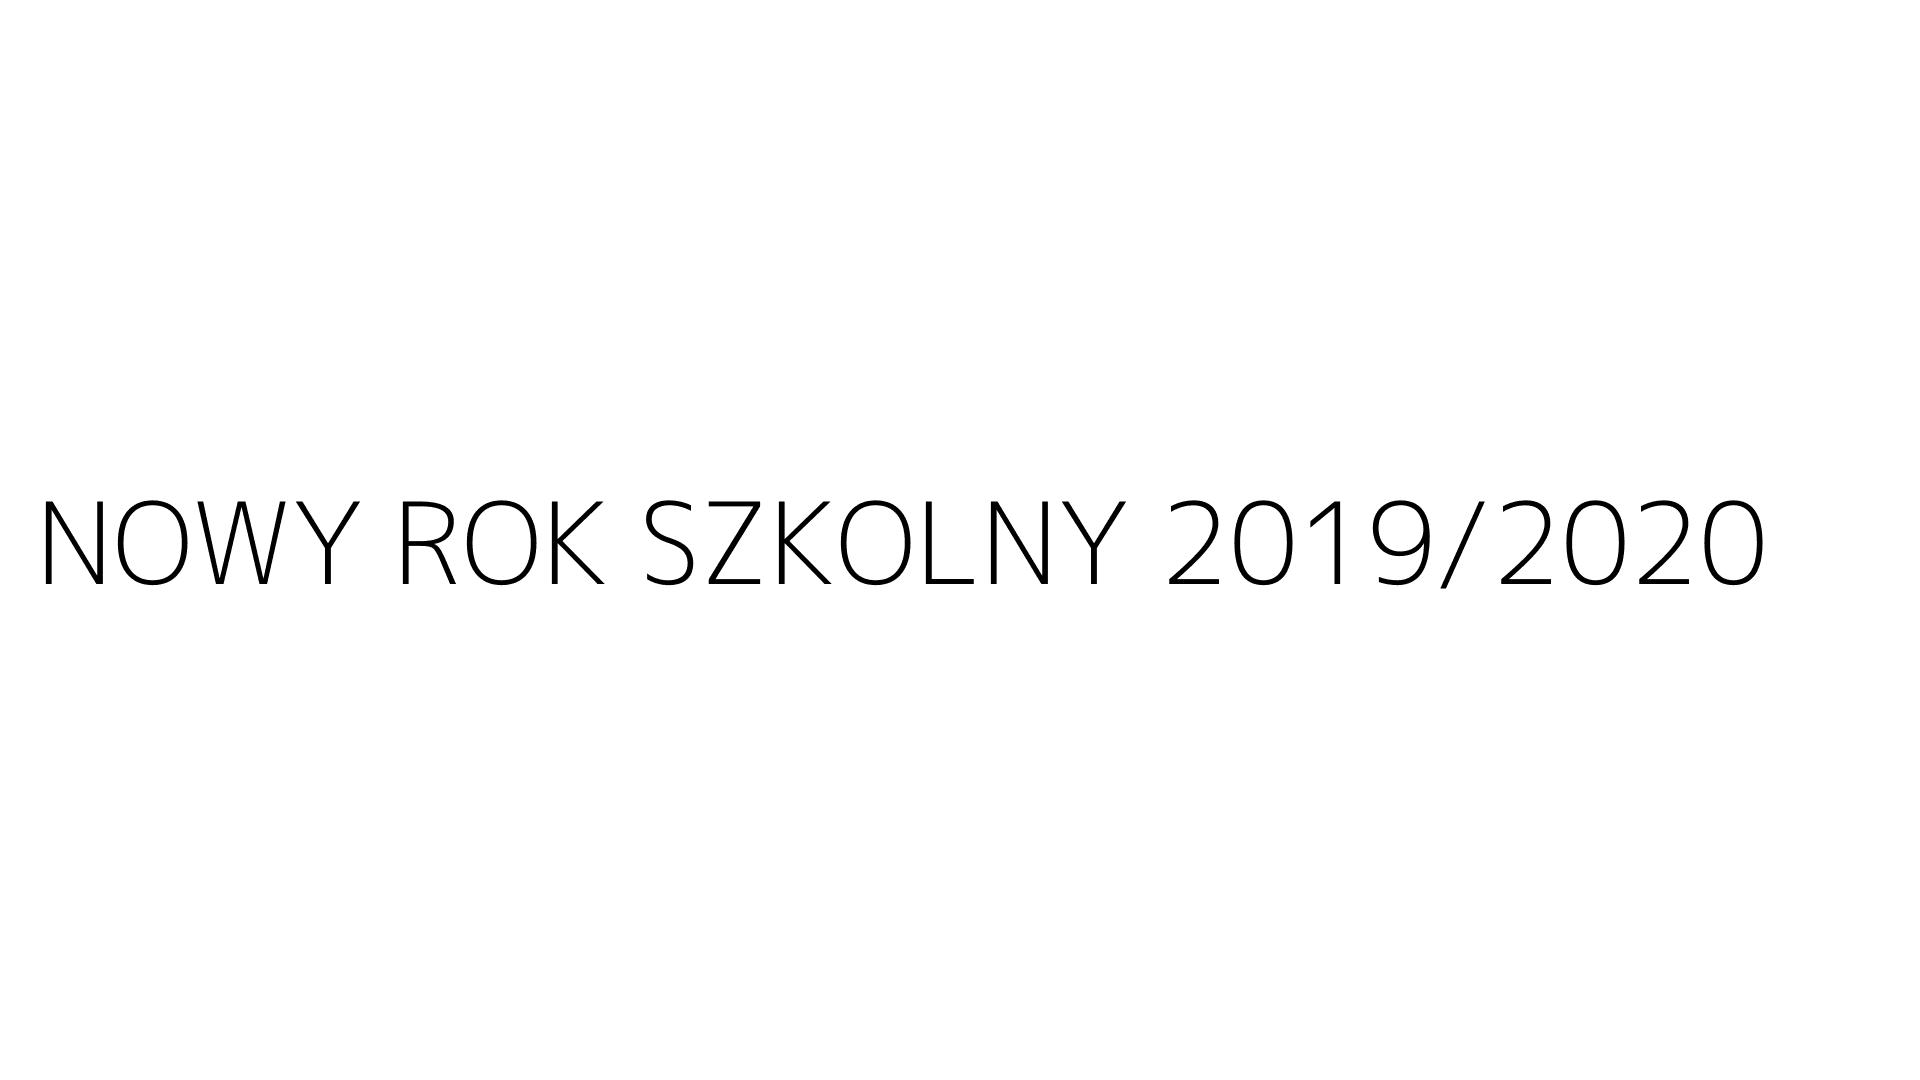 NOWY ROK SZKOLNY 2019/2020